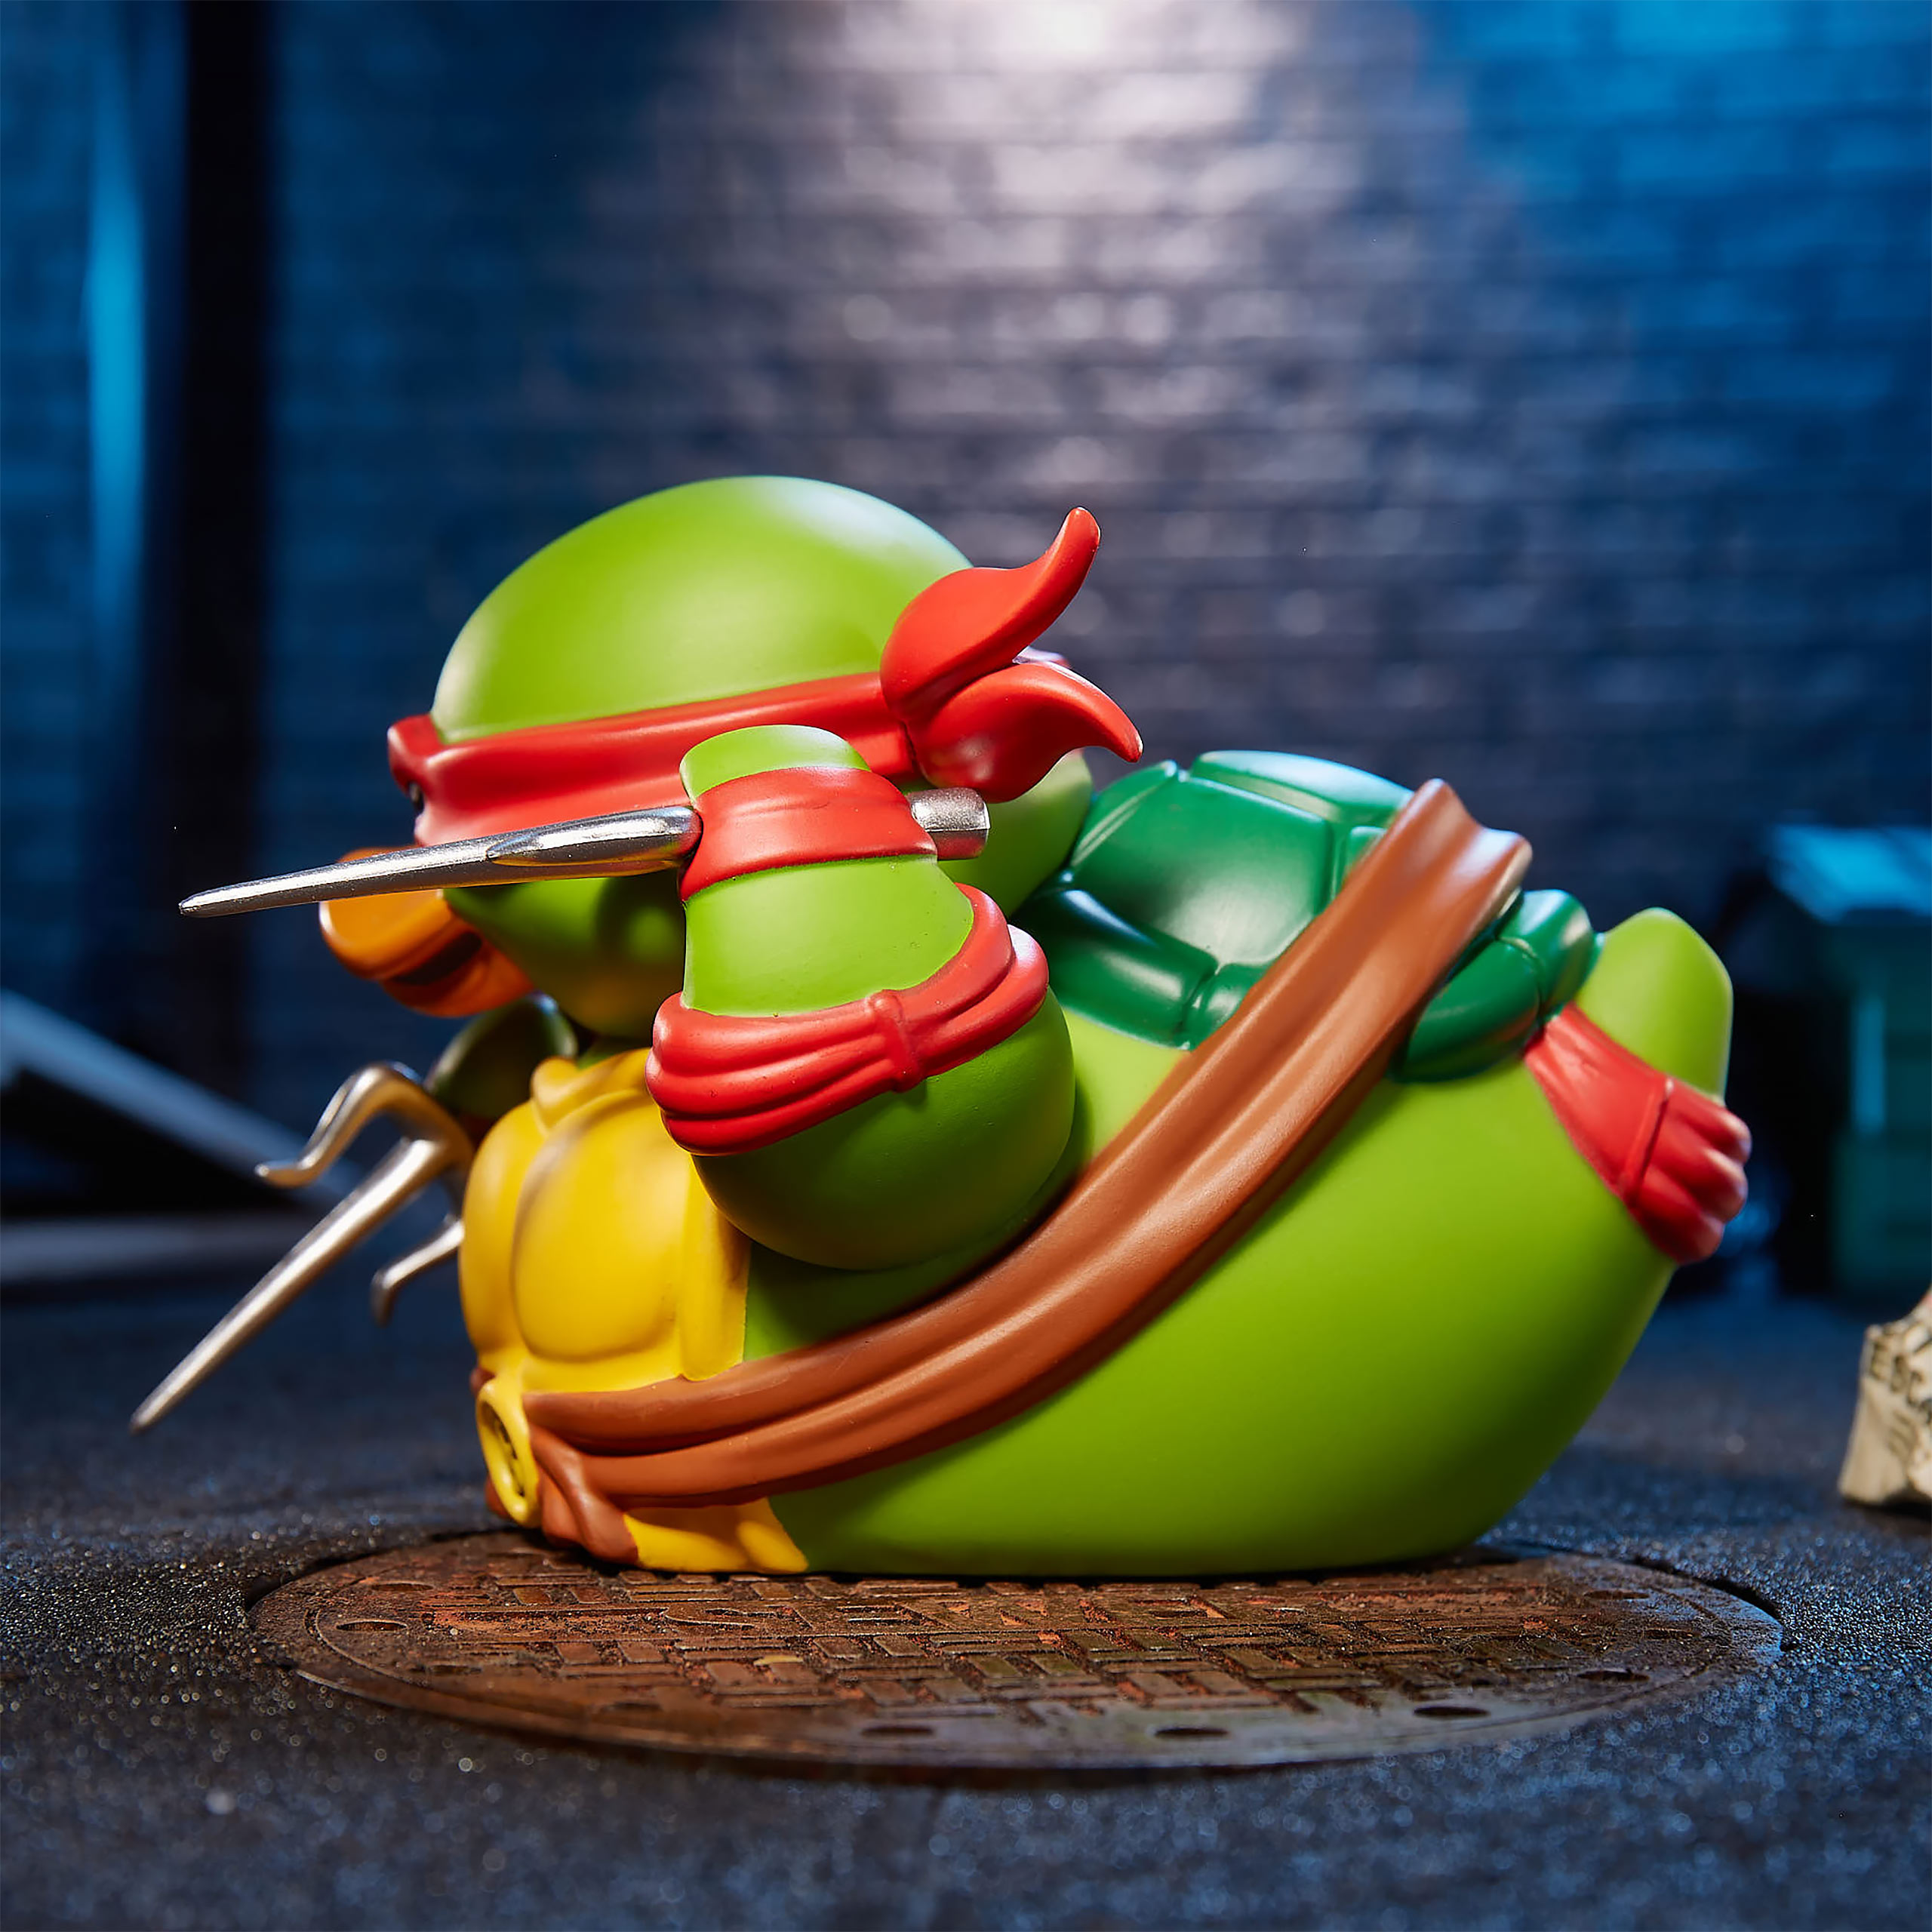 Teenage Mutant Ninja Turtles - Raphael TUBBZ Decorative Duck